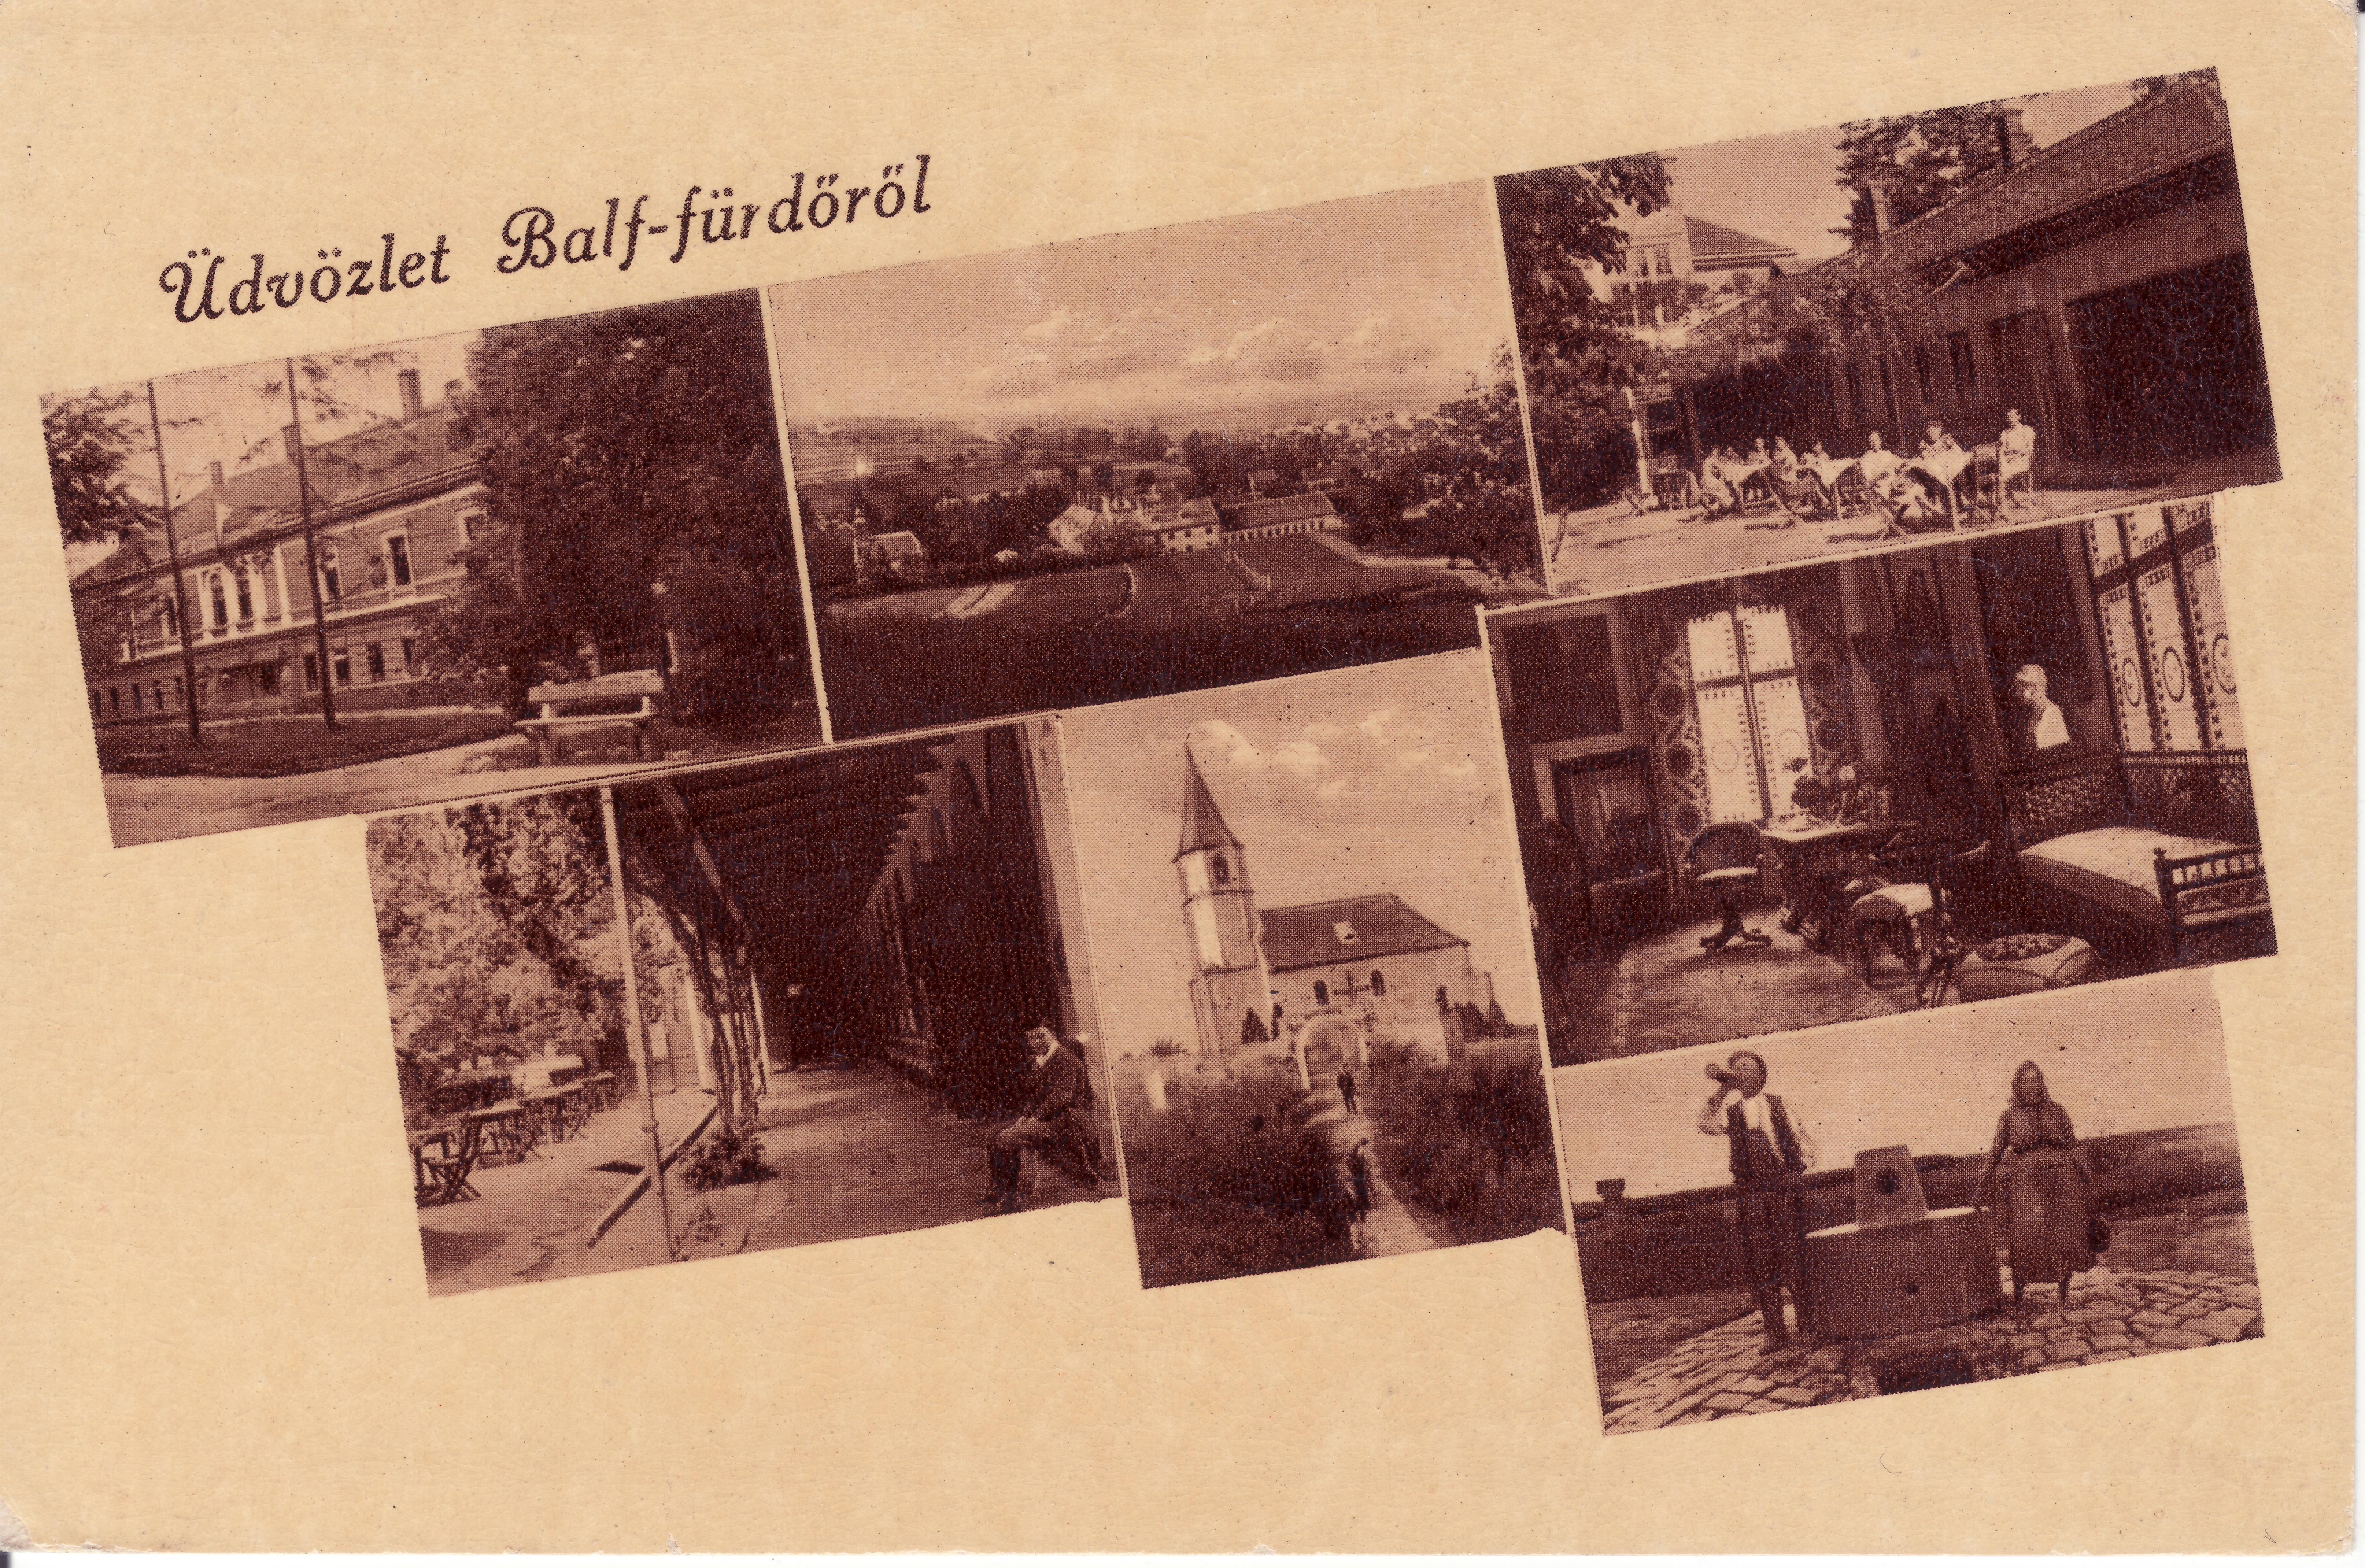 Balfi - Üdvözlet Balf - fürdőről (Magyar Környezetvédelmi és Vízügyi Múzeum - Duna Múzeum CC BY-NC-SA)